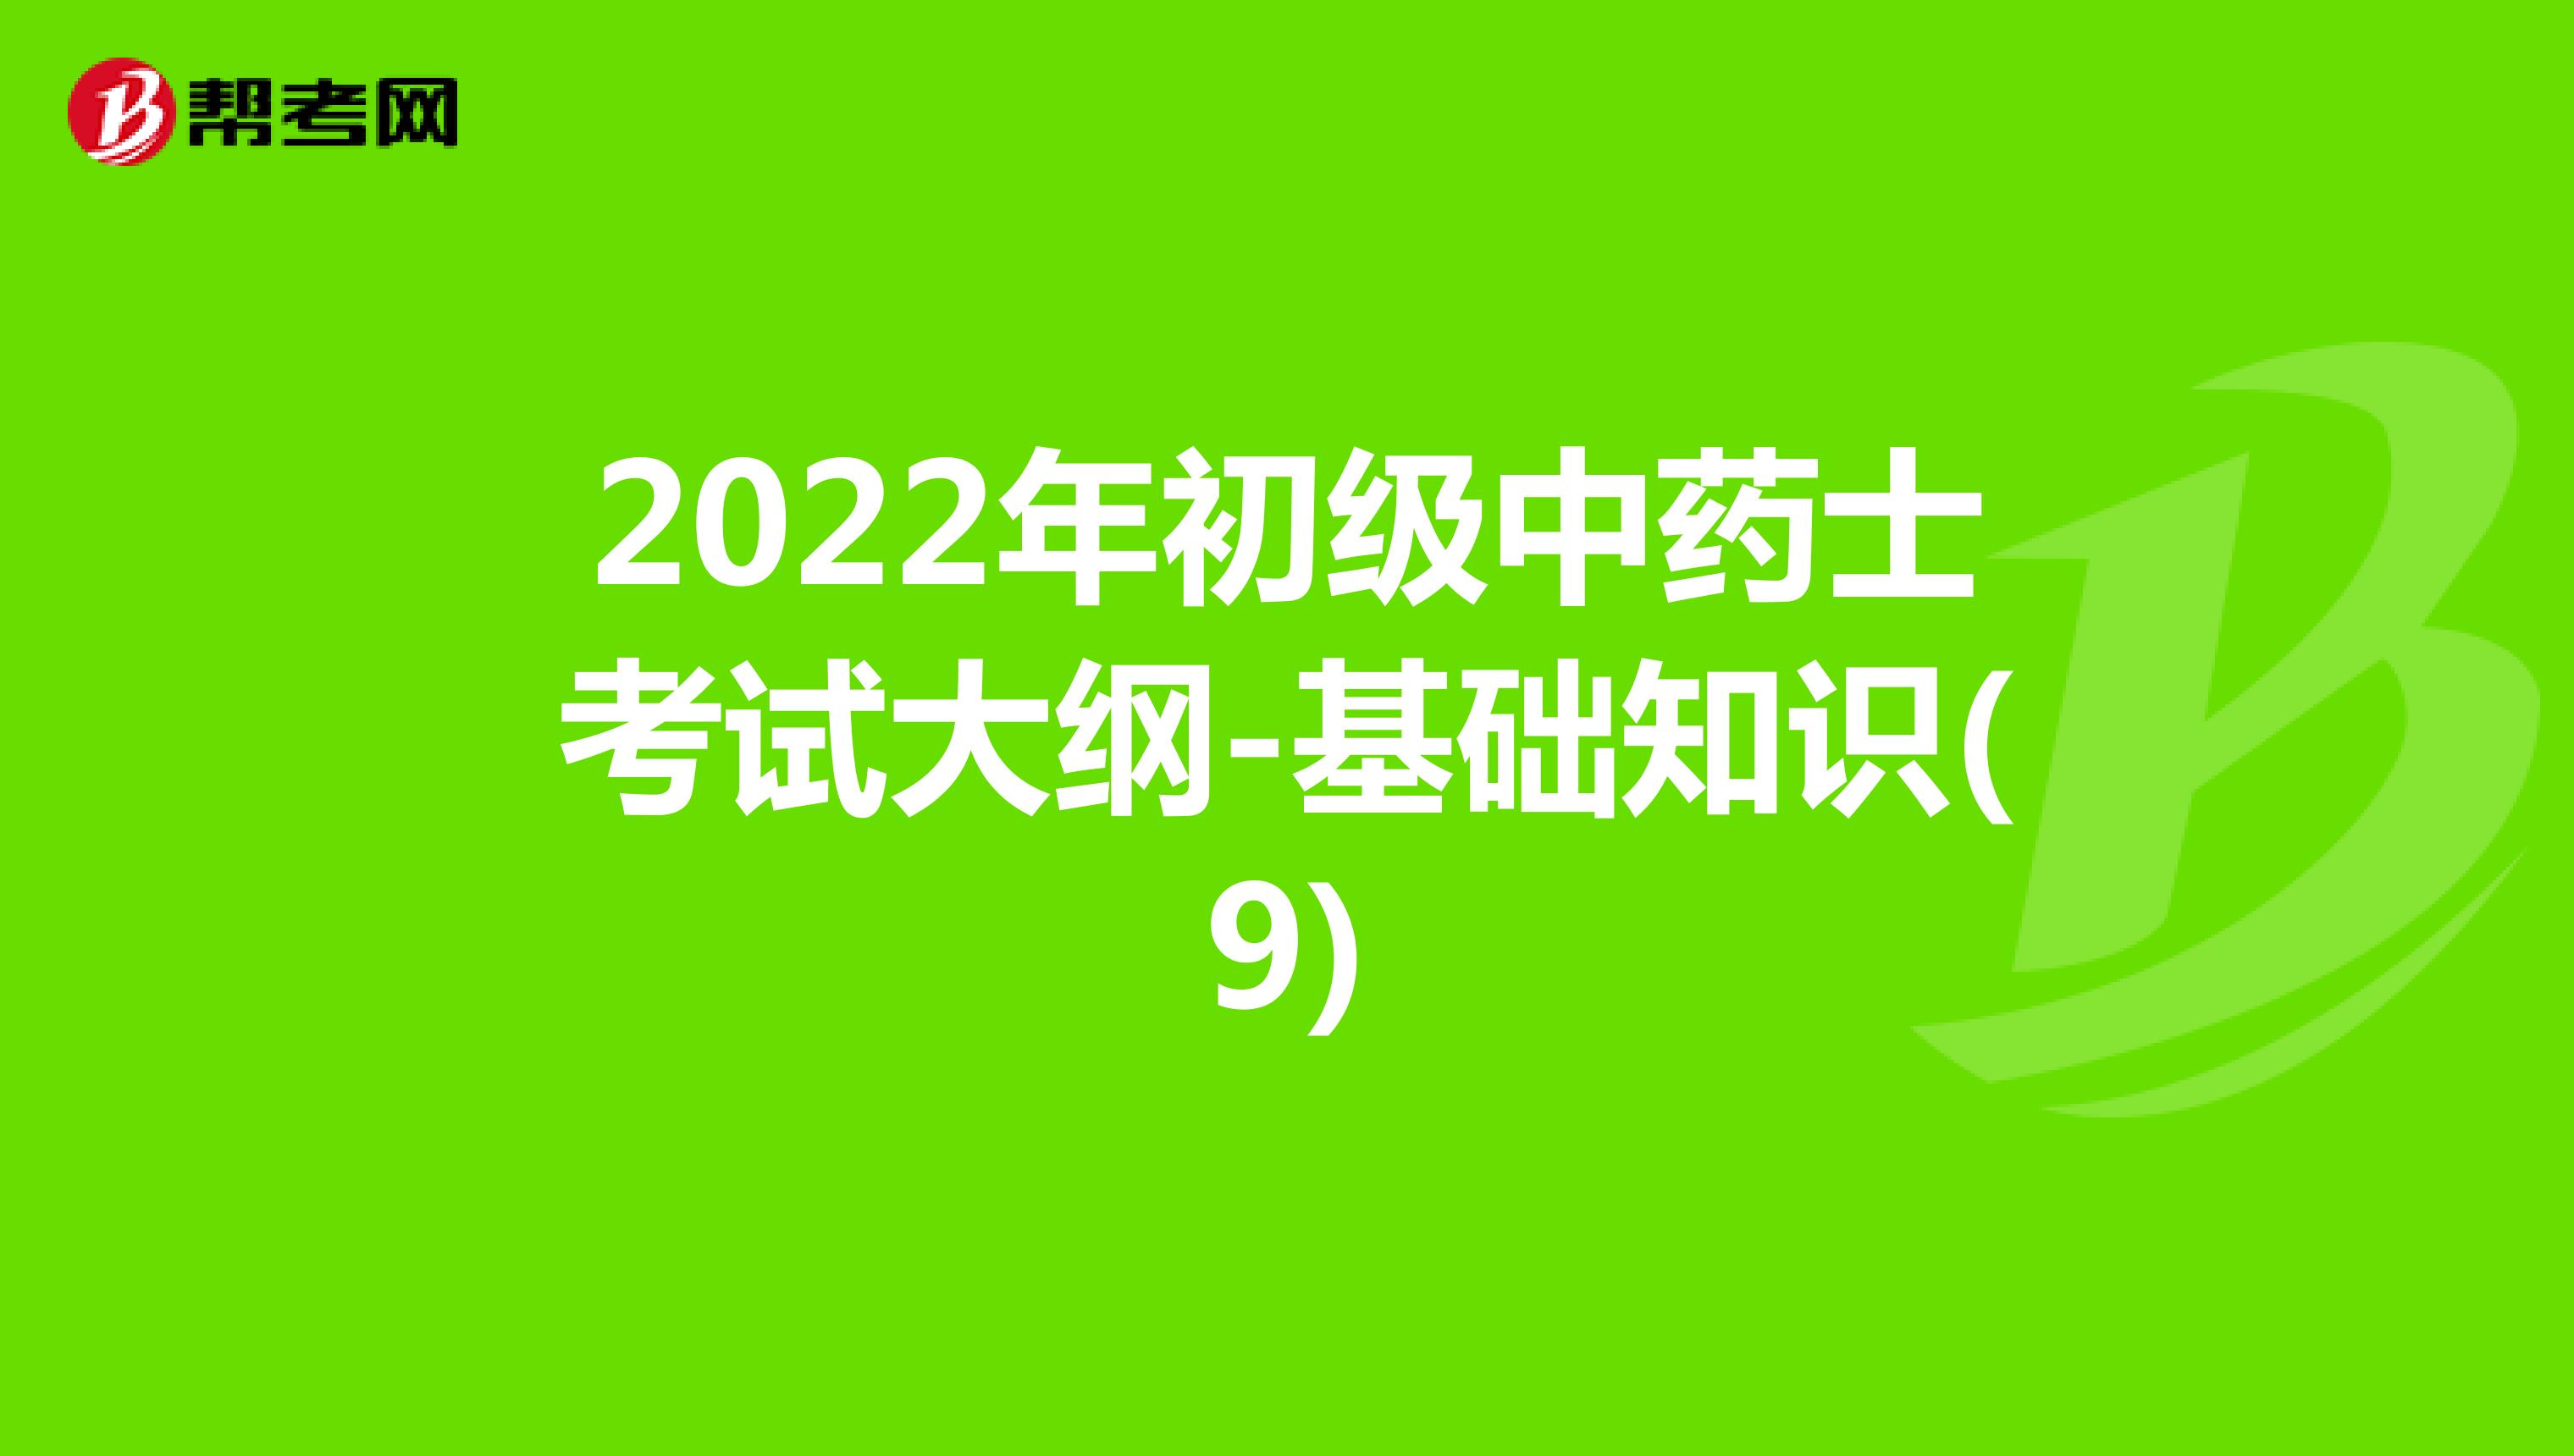 2022年初级中药士考试大纲-基础知识(9)